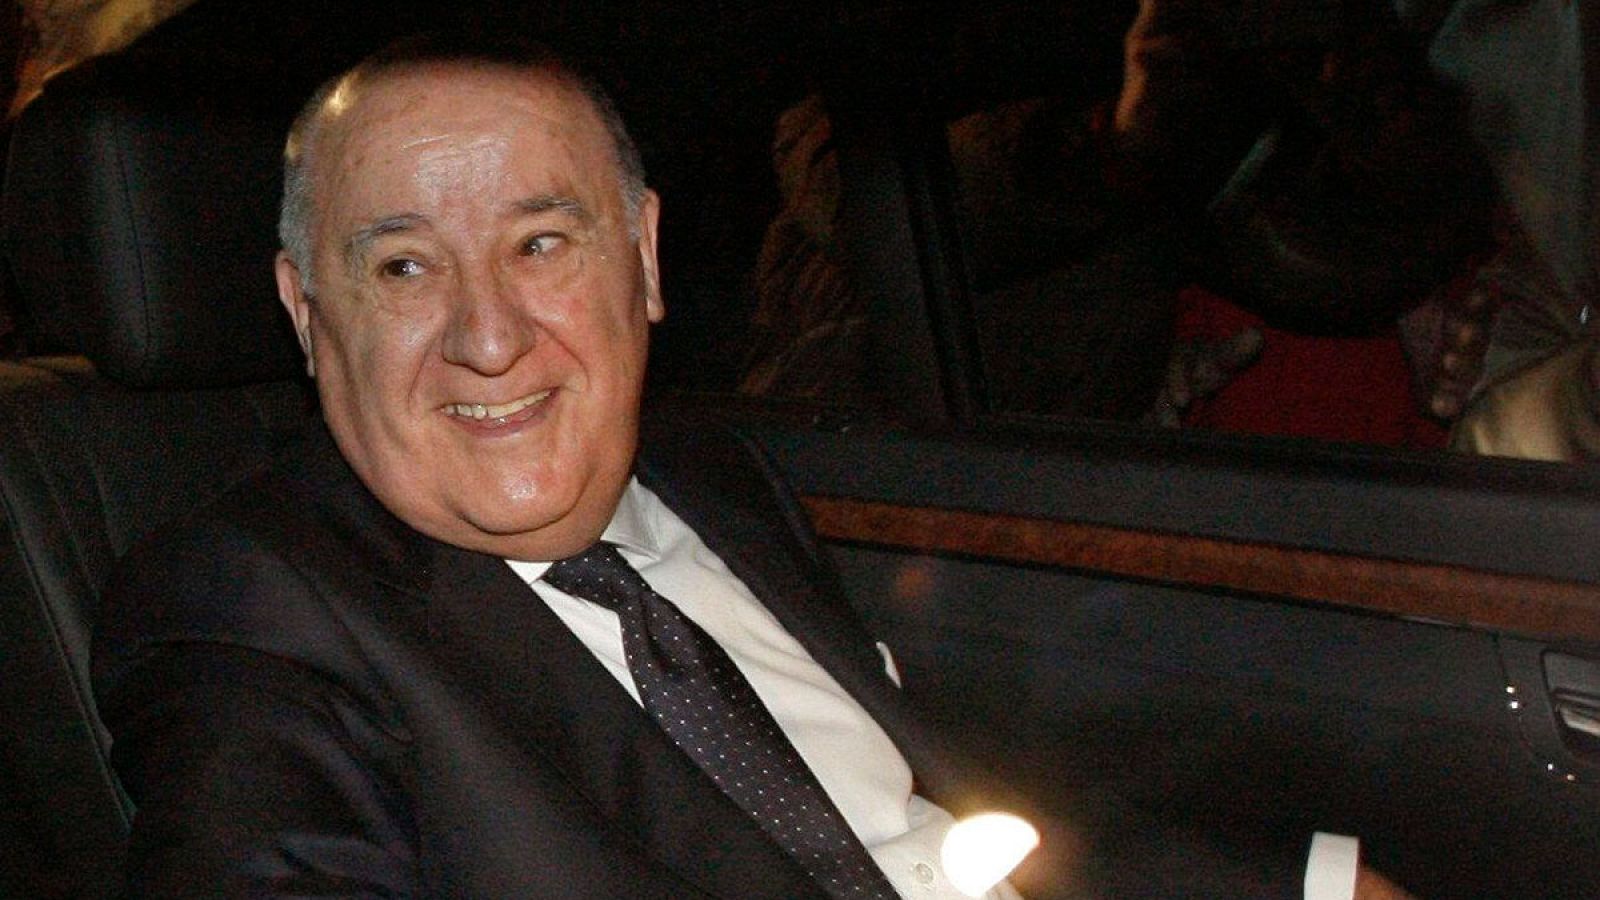 El empresario español Amancio Ortega, sexto hombre más rico del mundo según la revista Forbes